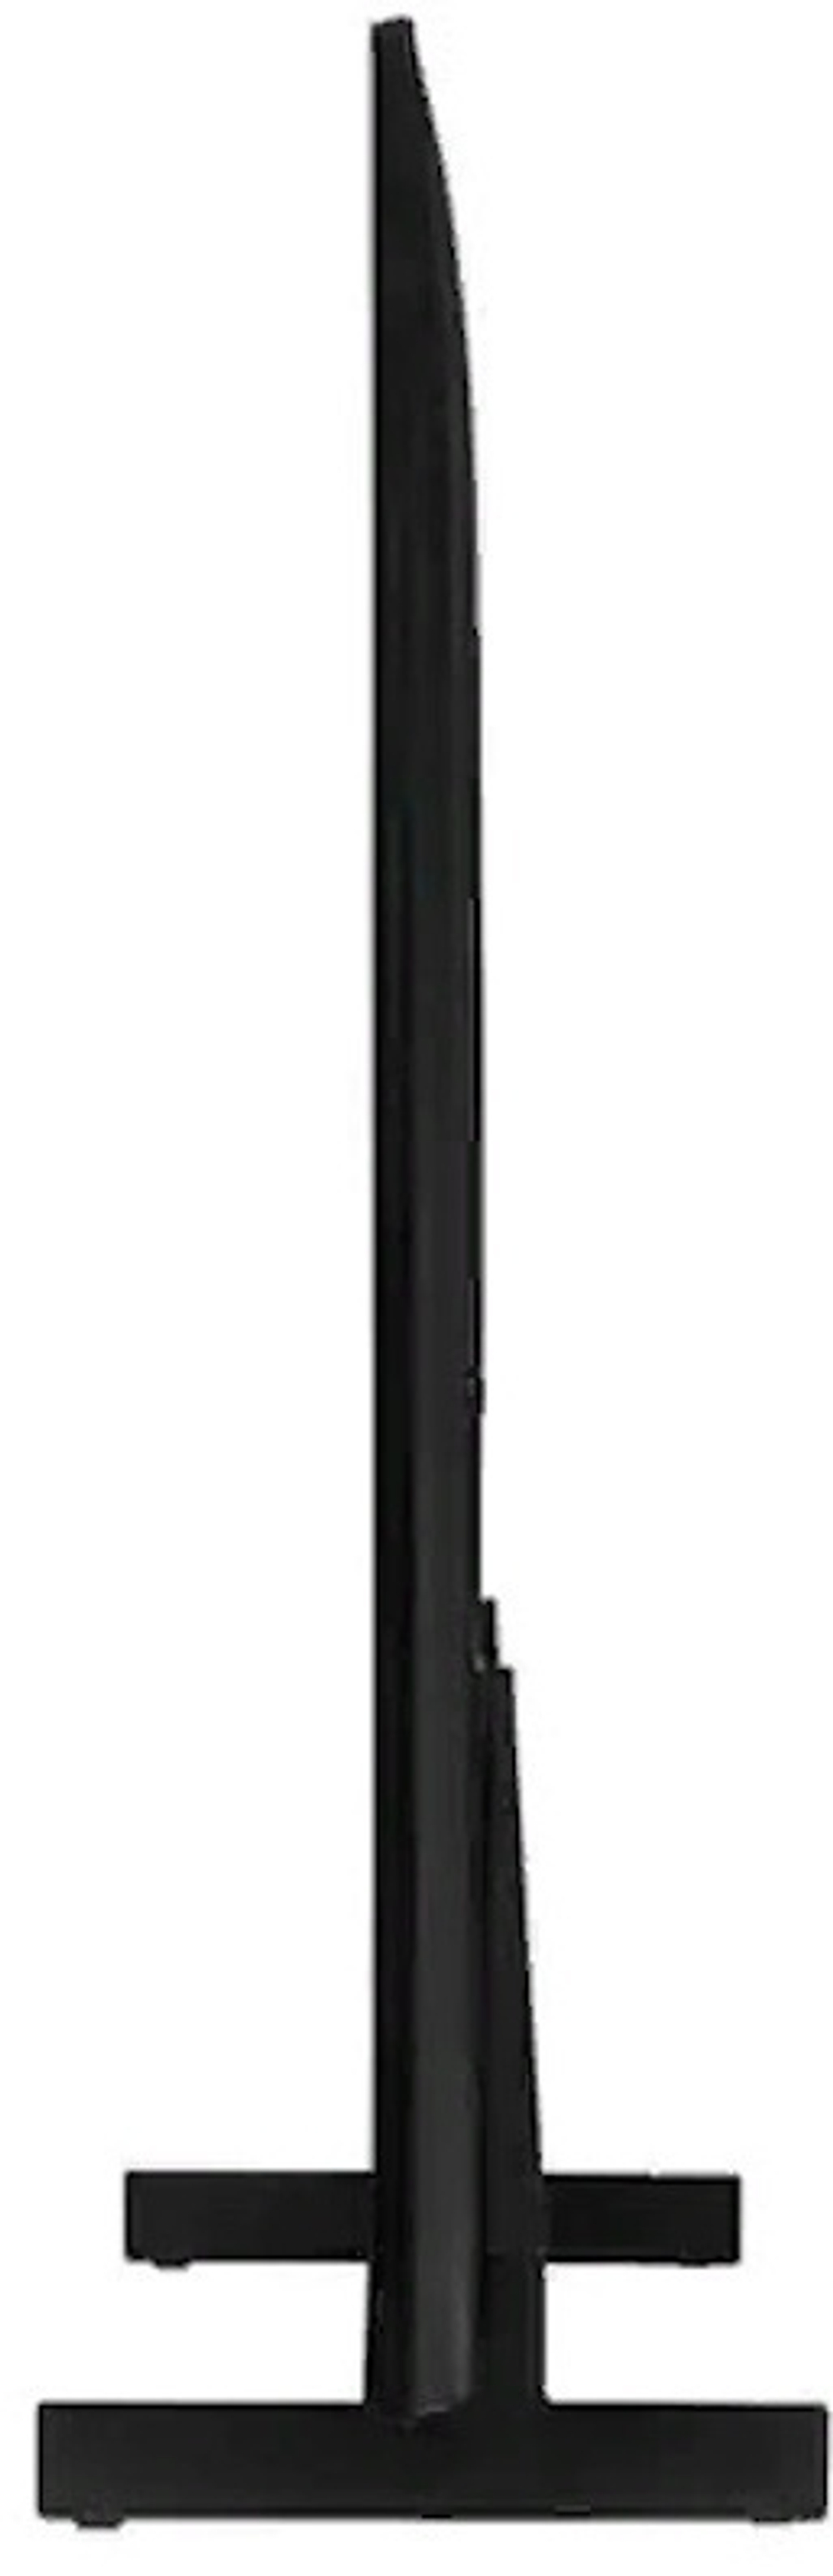 Телевизор Samsung UE75CU8000UXCE 191 см черный